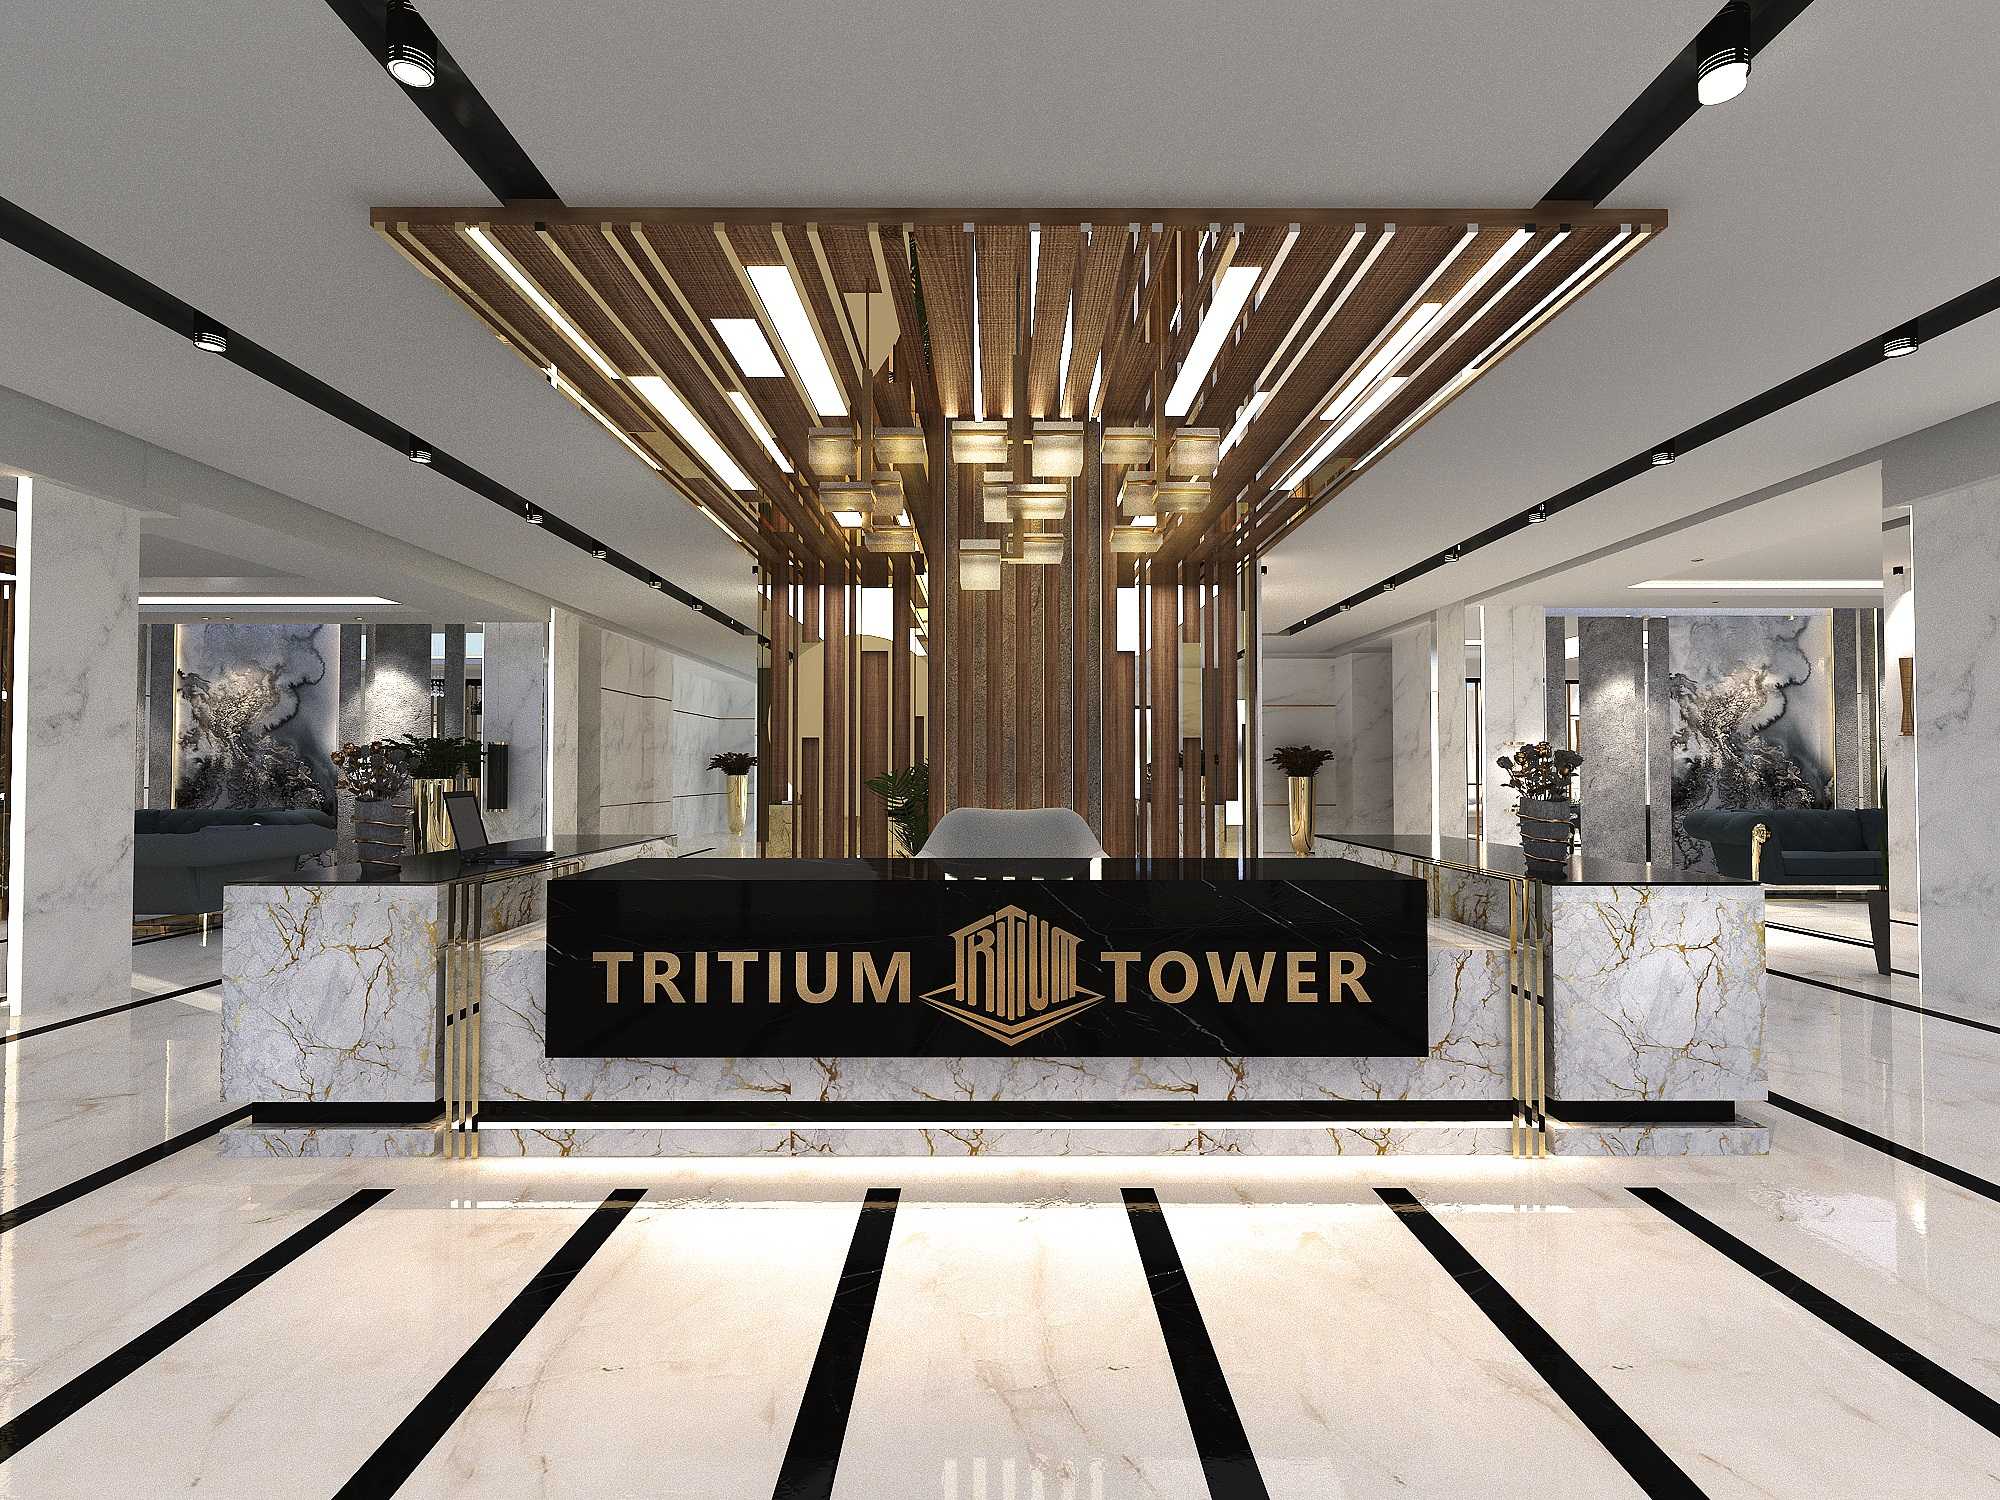 خرید برج تریتیوم 1